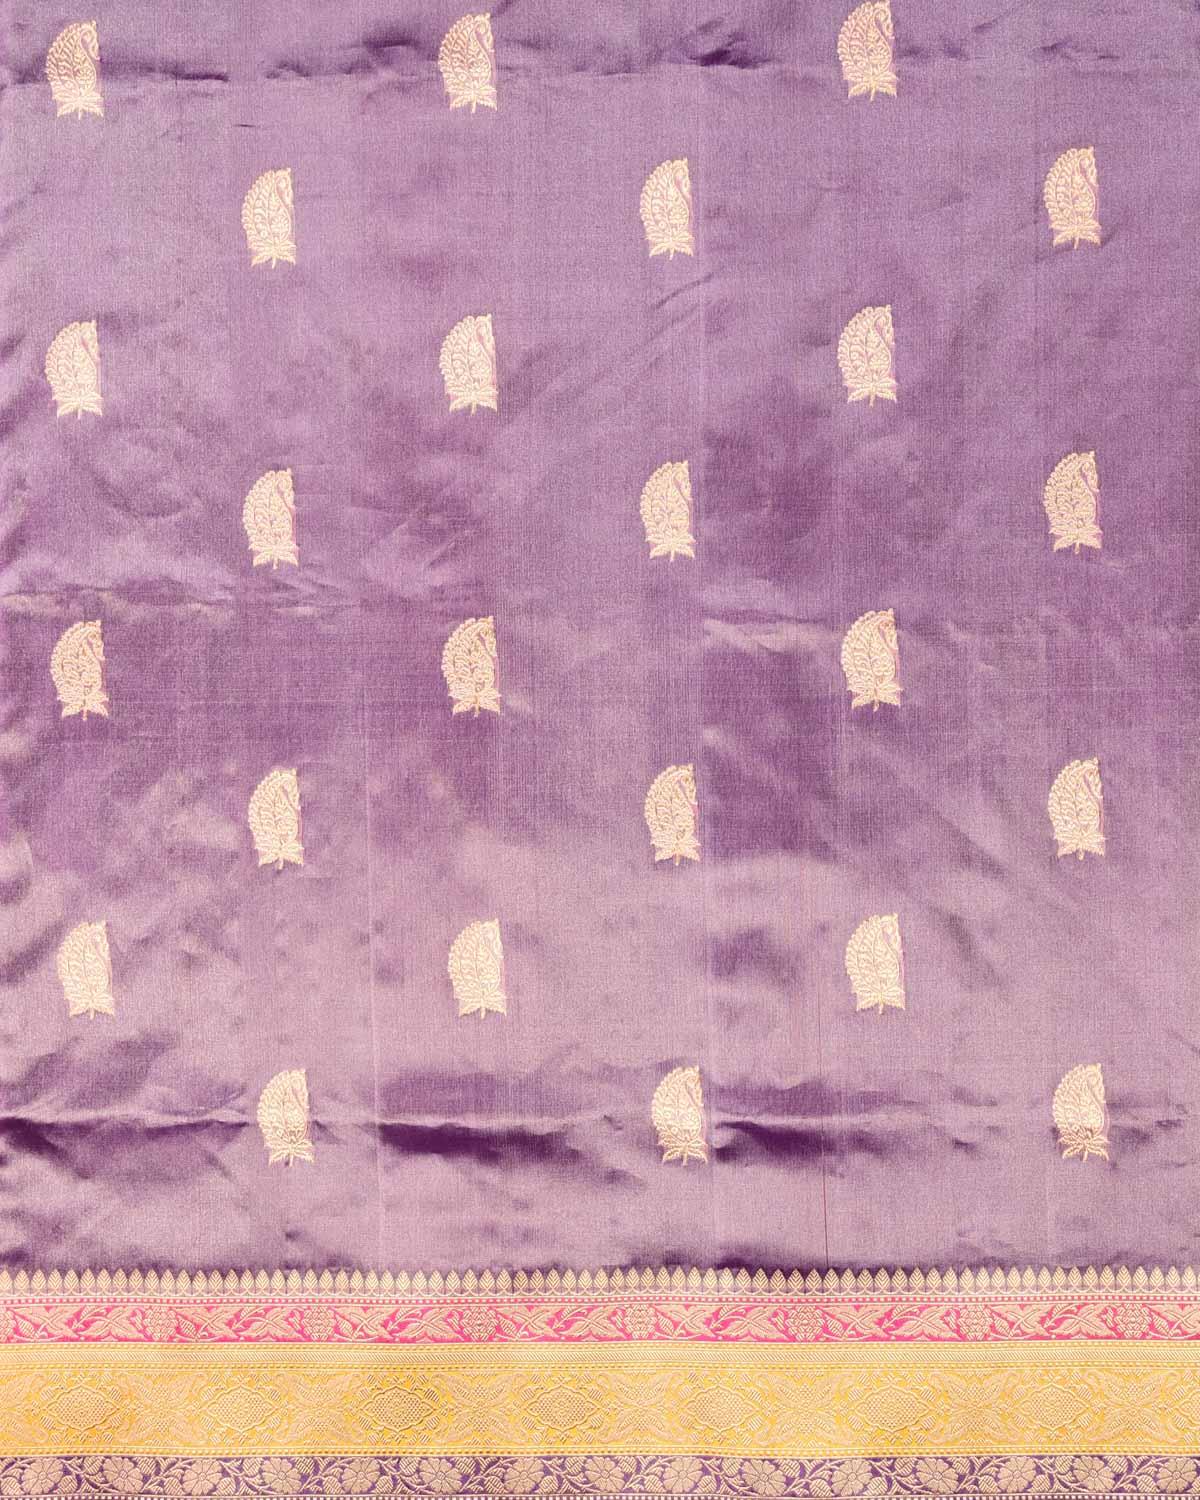 Metallic French Lilac Banarasi Paisley Buti Kadhuan Brocade Handwoven Kora Tissue Saree - By HolyWeaves, Benares